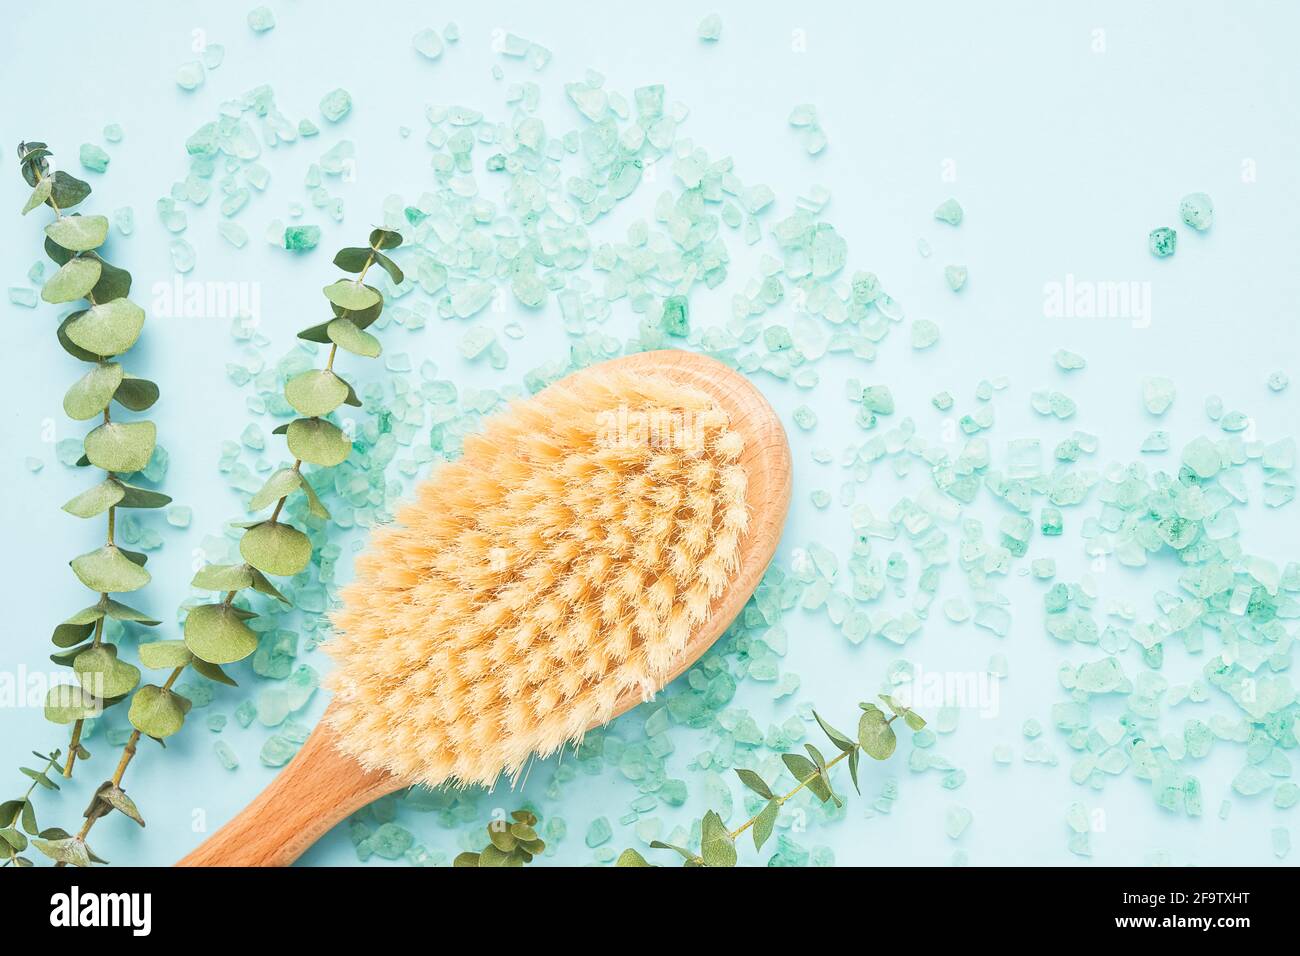 SPA-Behandlungskonzept. Anti-Cellulite-Körperbürste, Eukalyptuszweige und Badesalz auf blauem Hintergrund. Draufsicht, Platz für Text kopieren Stockfoto